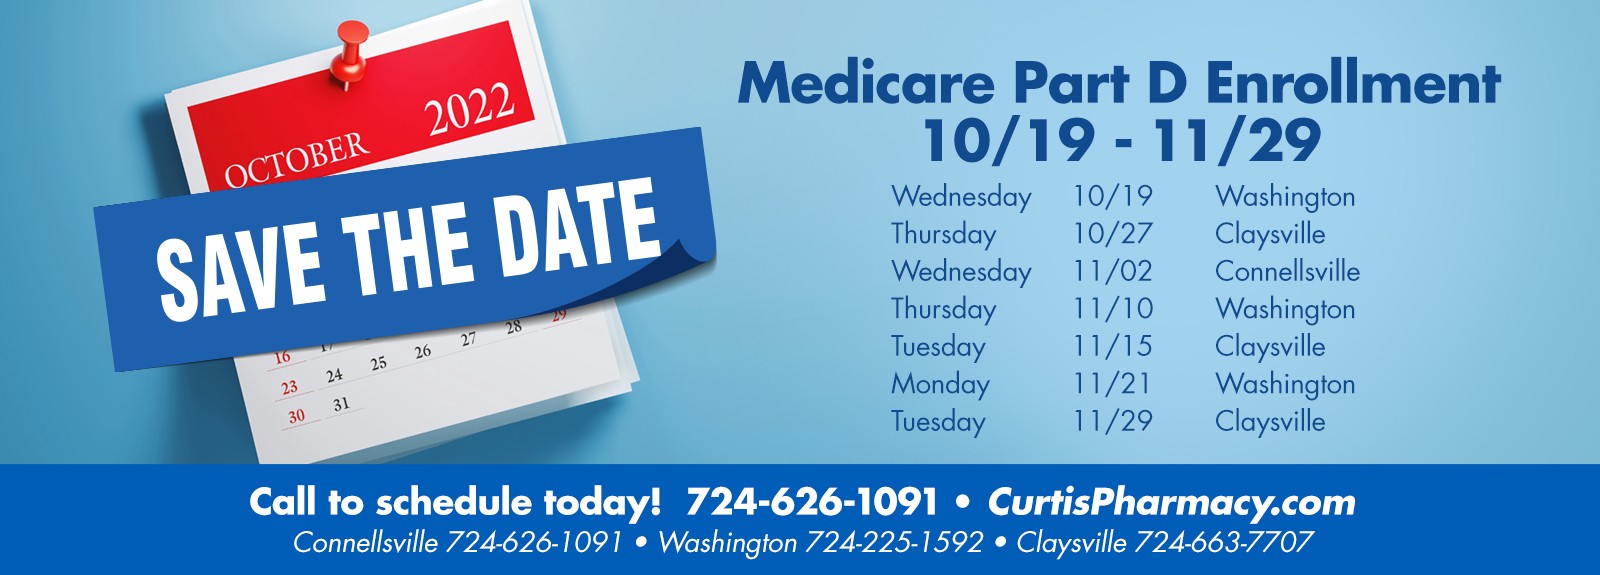 Schedule Medicare Part D Enrollment